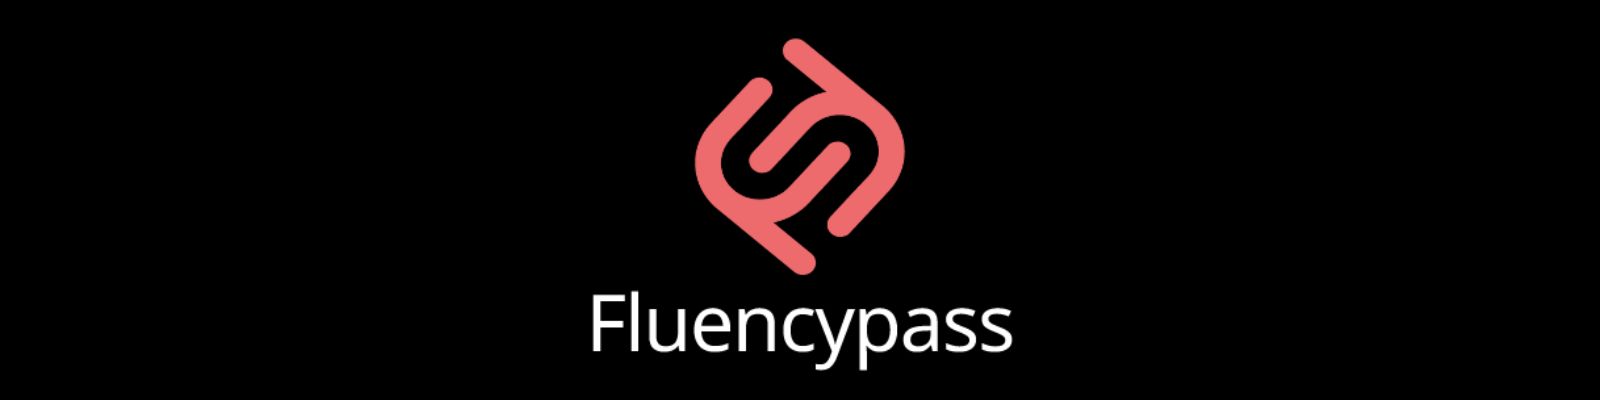 WhatsApp Fluencypass: Saiba como entrar em contato!